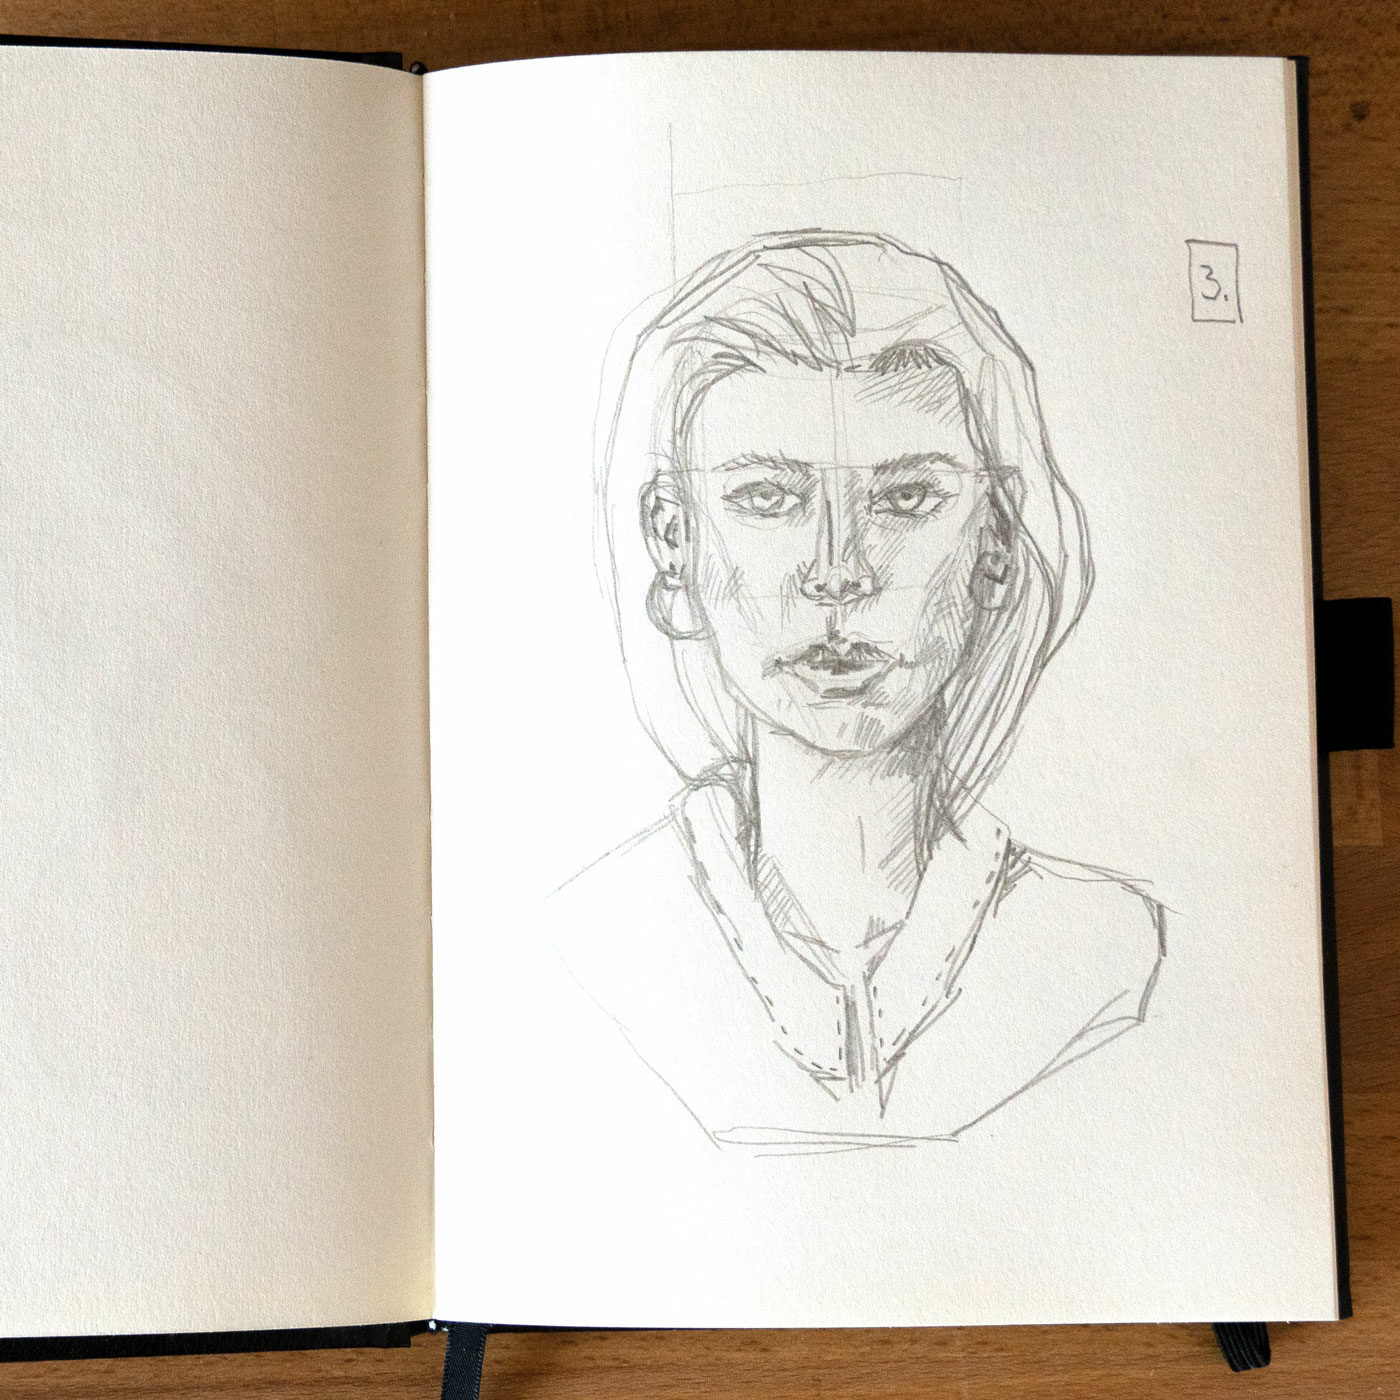 Drittes Portrait: Frau mit markanten Gesichtszügen, langen Haaren und Ohrringen.